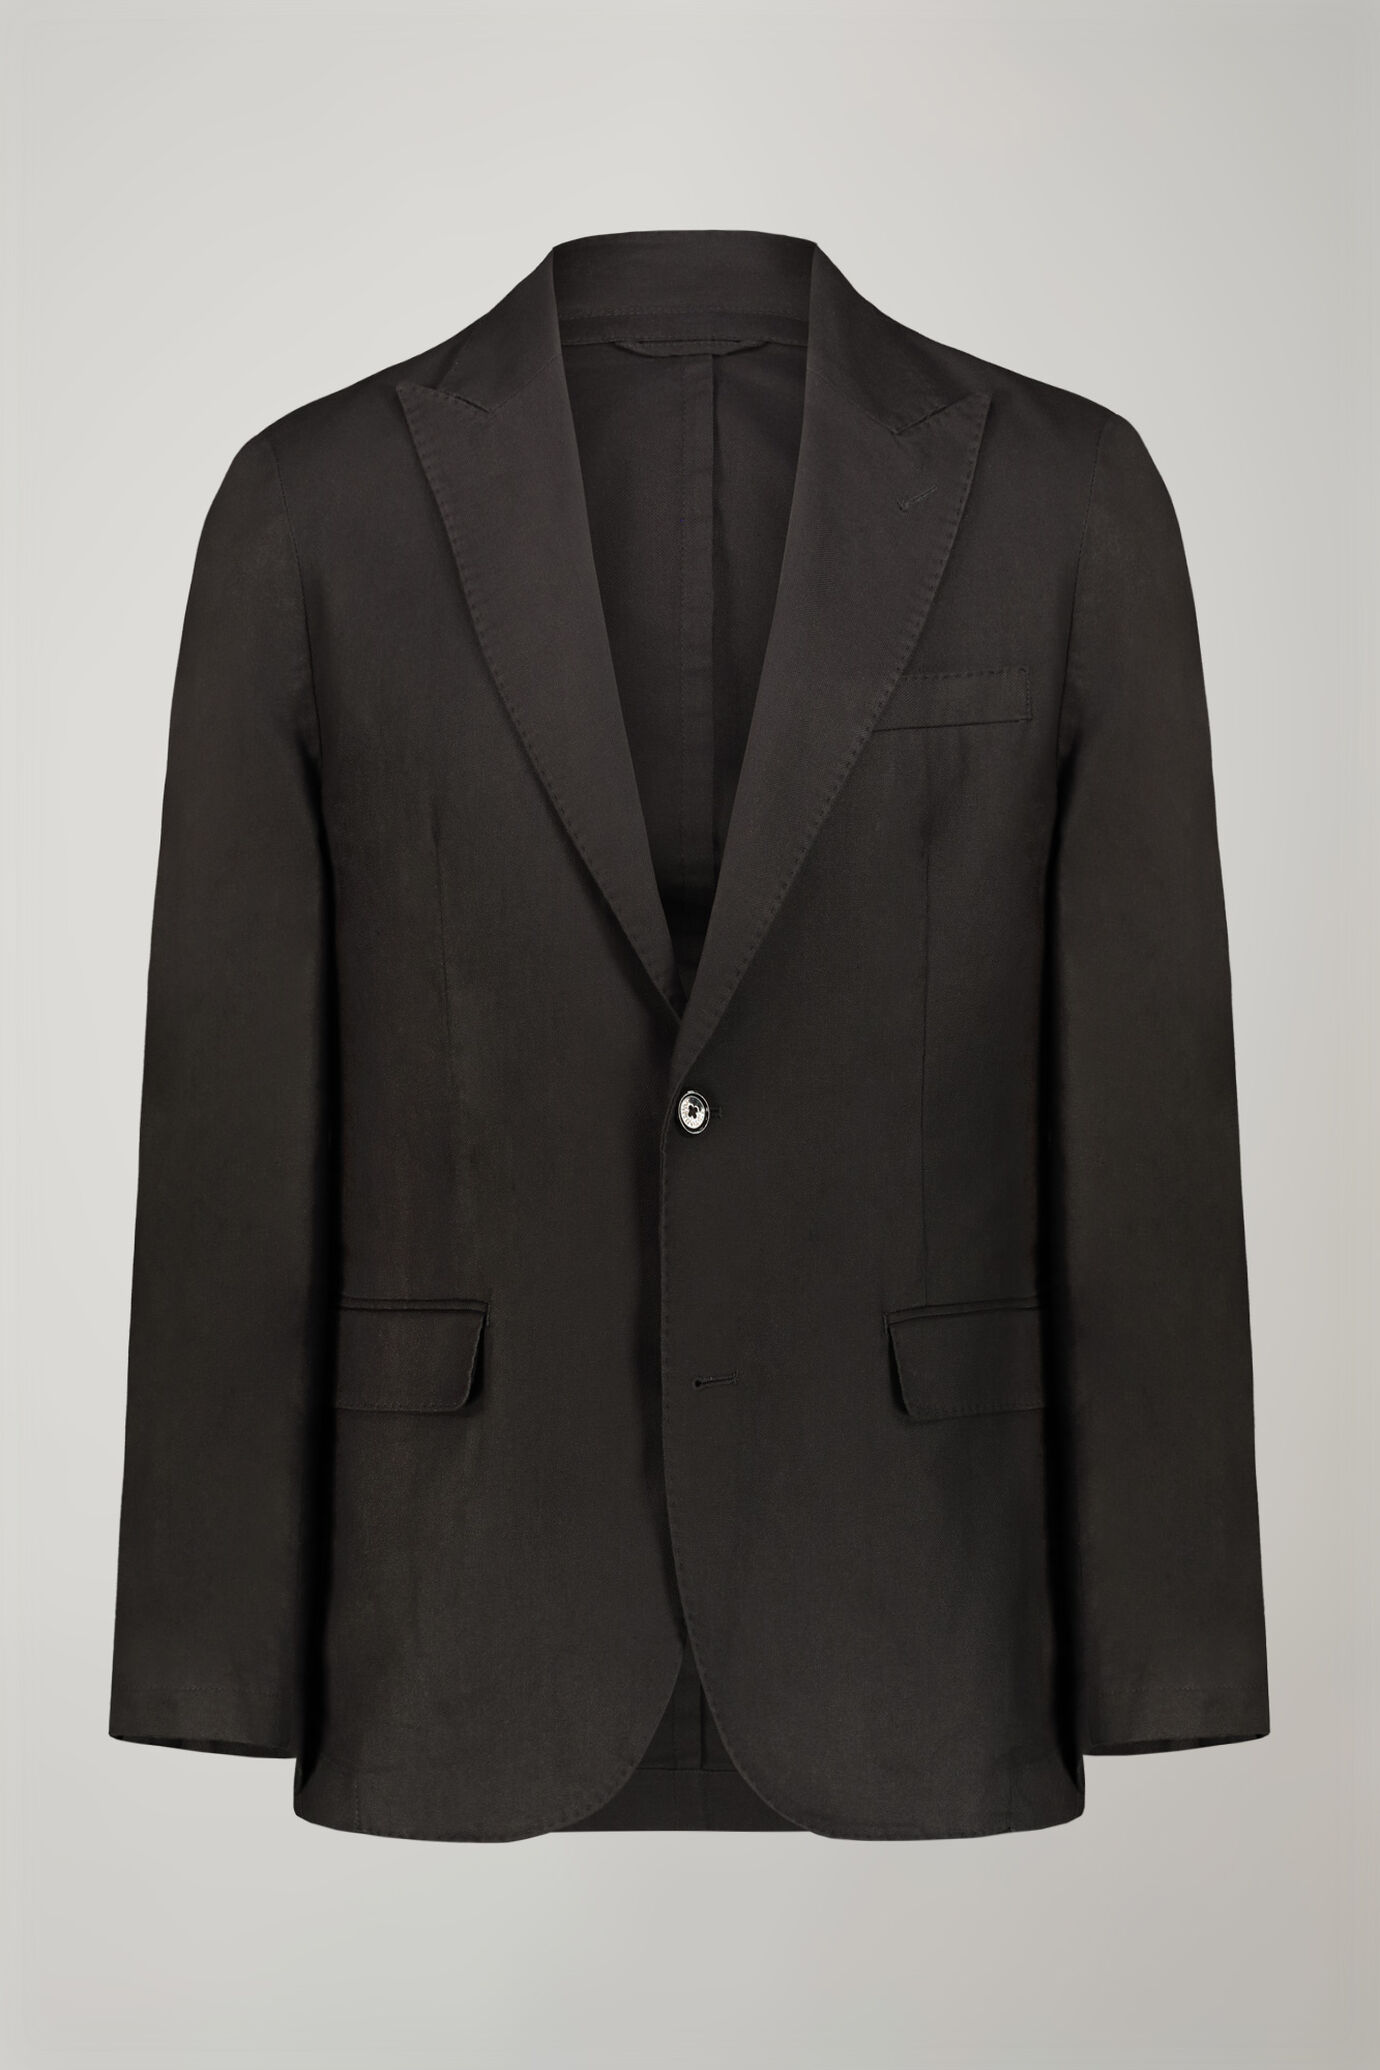 Veste homme à simple boutonnage, non doublée, en lin et coton, avec revers en pointe, coupe régulière image number 4